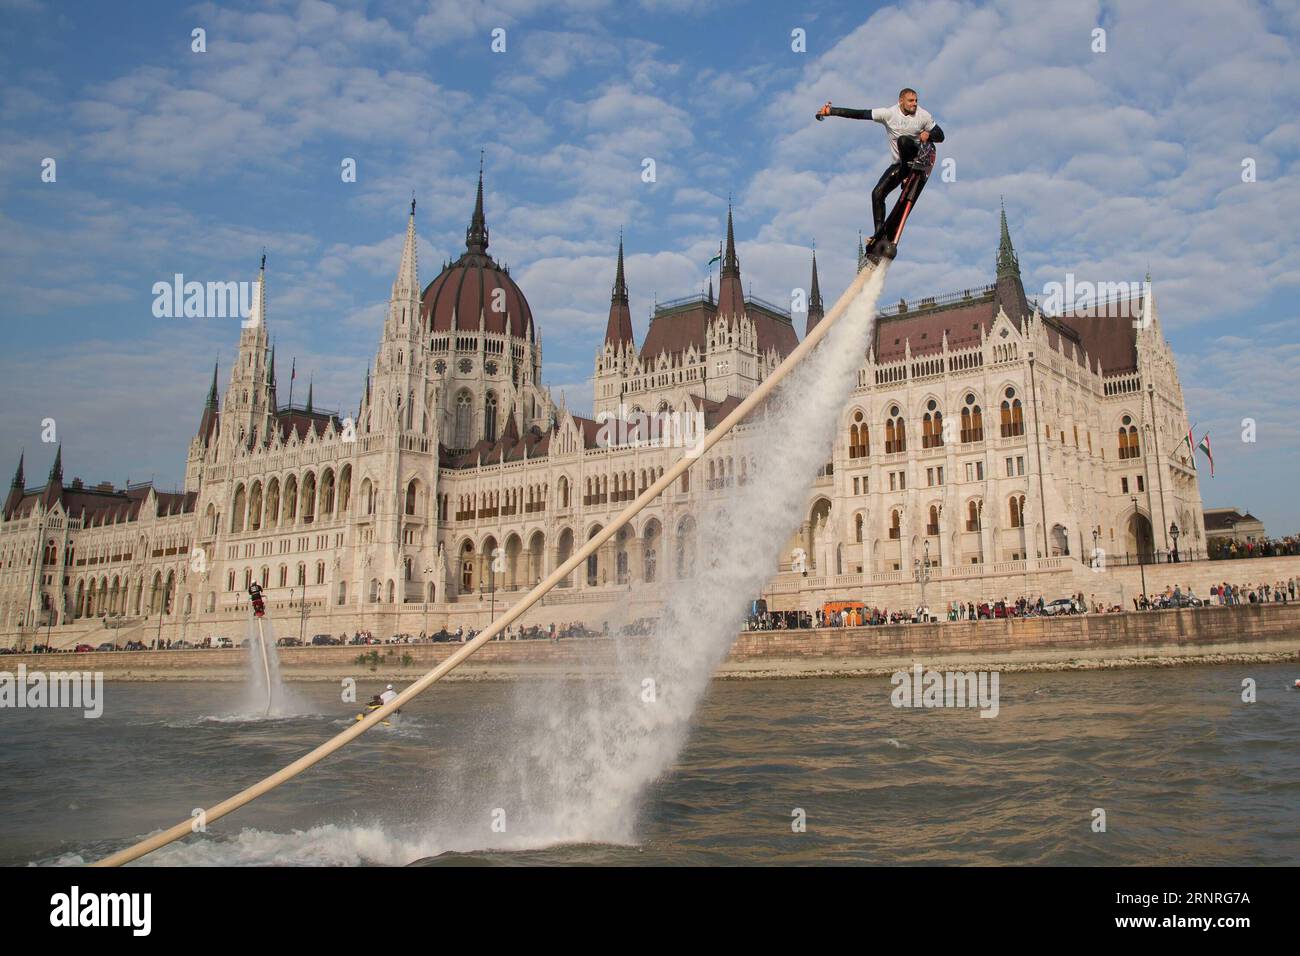 (170930) -- BUDAPEST, 30 septembre 2017 -- des coureurs de flyboard jouent avec des flyboards propulsés sur le Danube devant le Parlement hongrois à Budapest, Hongrie, le 29 septembre 2017.) (SP)HONGRIE-BUDAPEST-FLYBOARD-SPORT EXTRÊME ATTILAXVOLGYI PUBLICATIONXNOTXINXCHN Banque D'Images